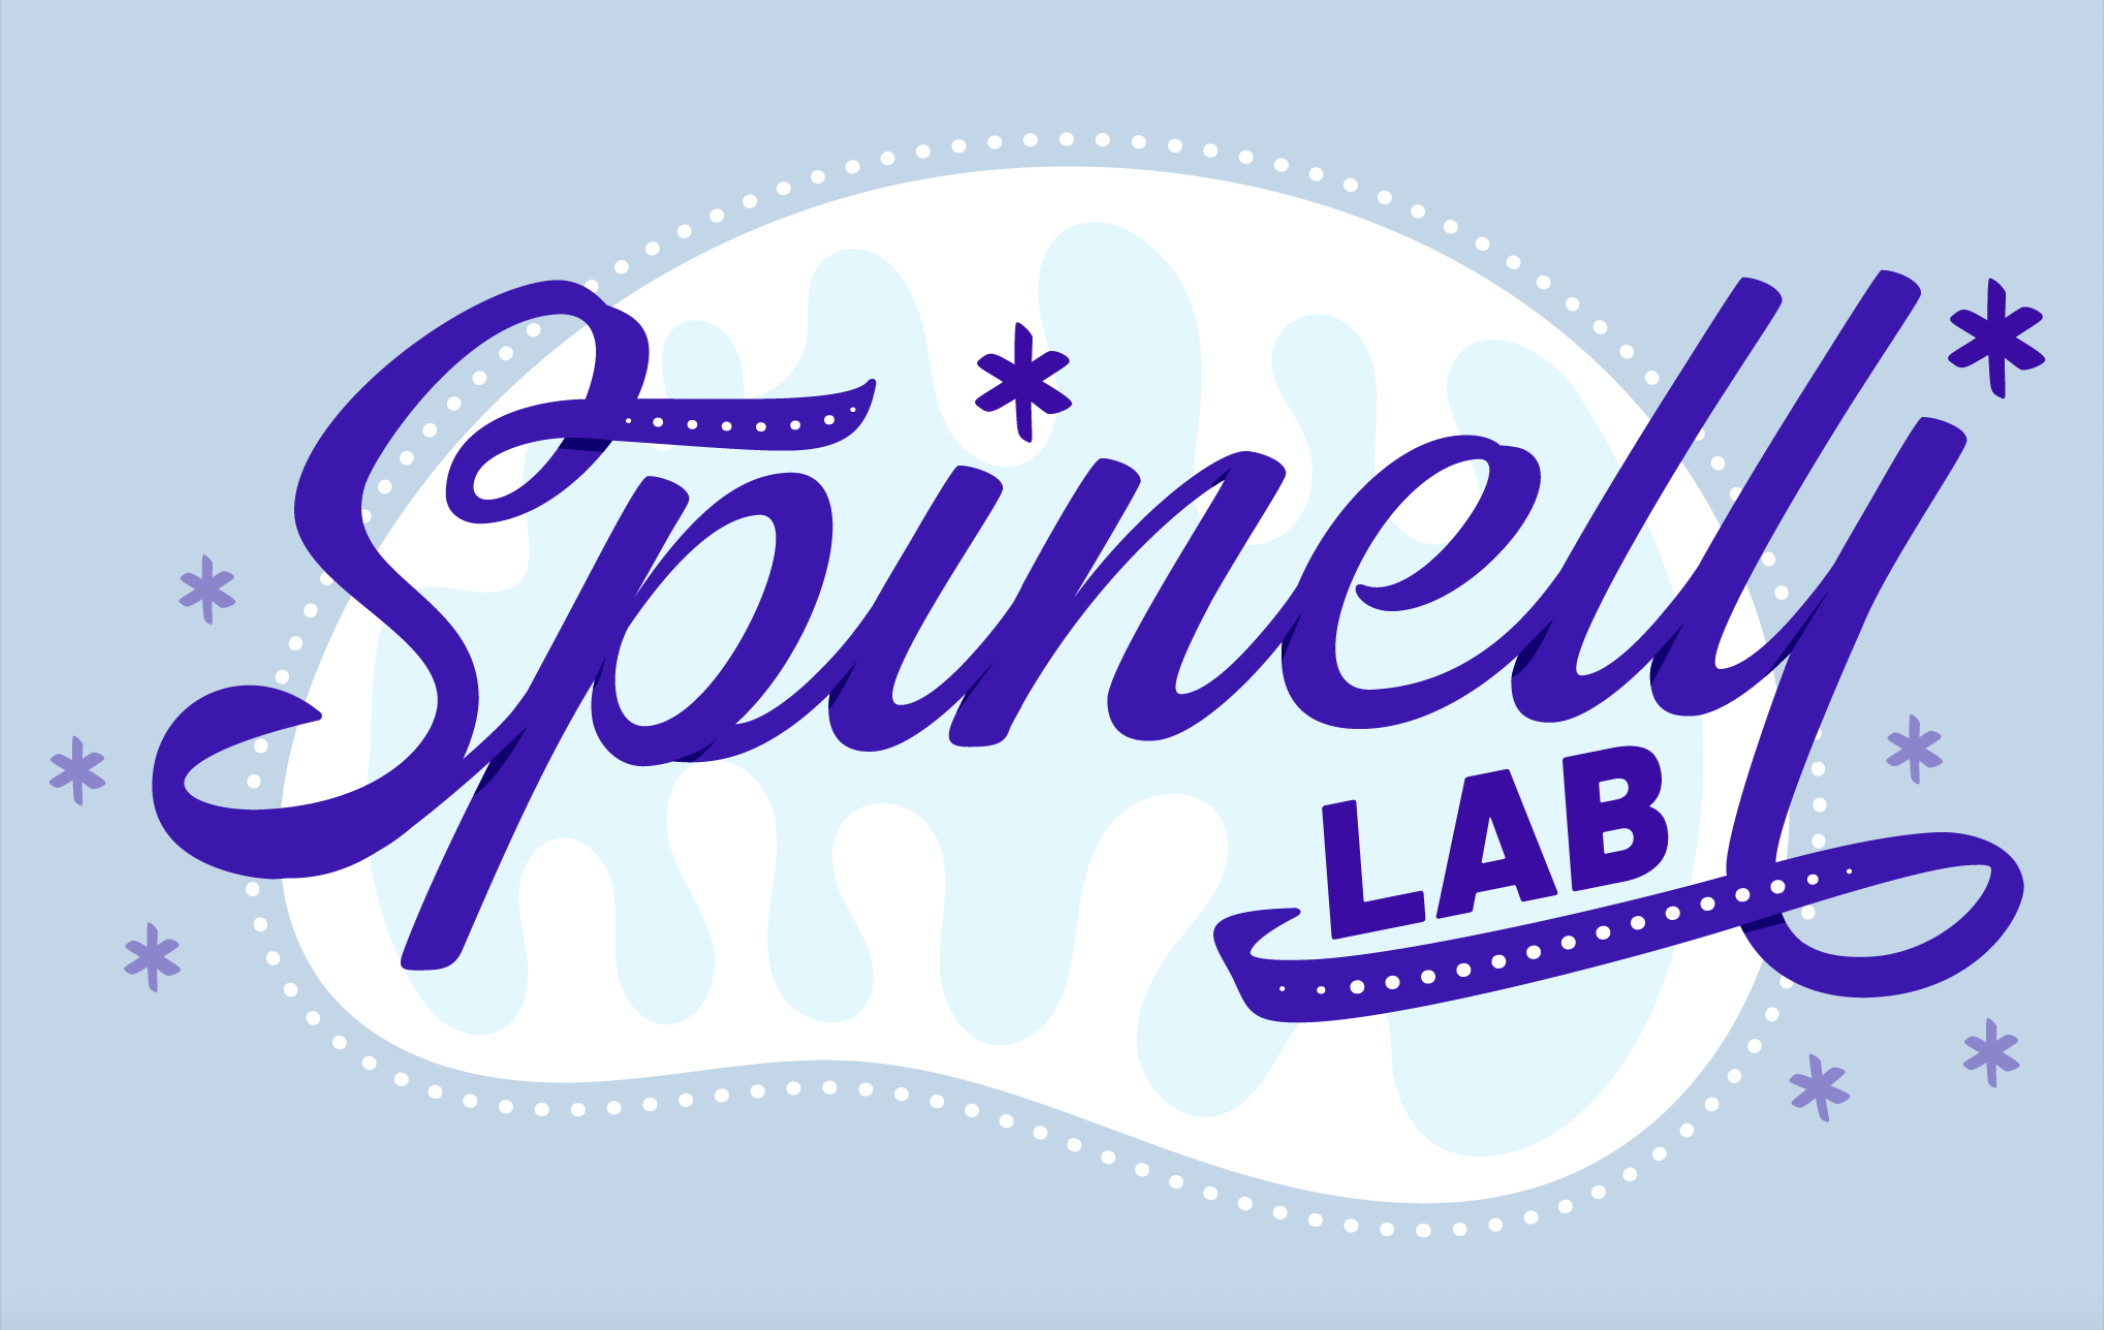 Spinelli lab logo